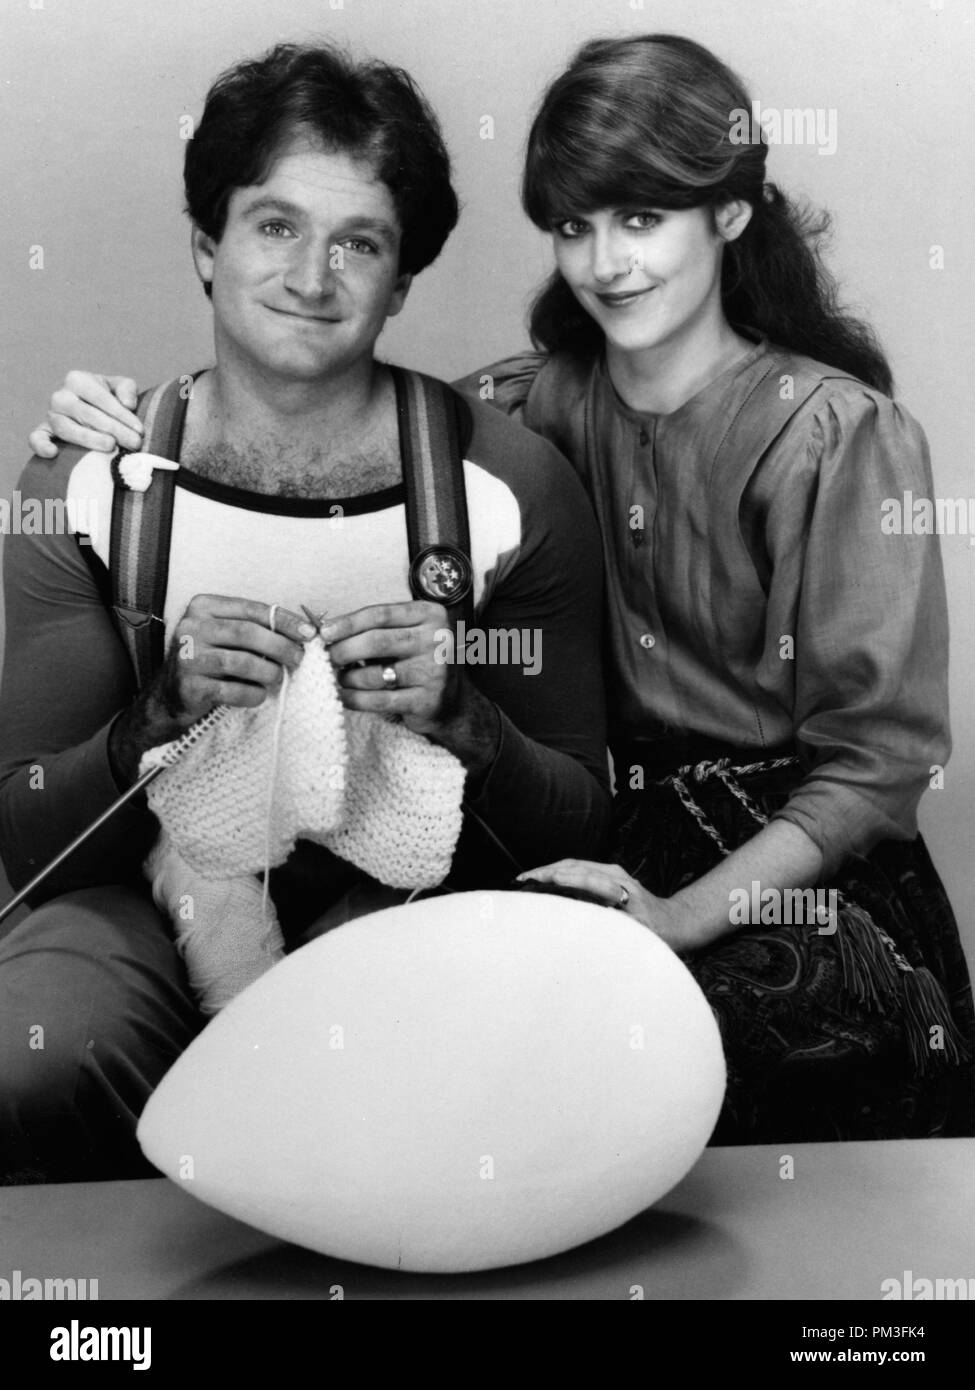 Studio Publicity Still: 'Mork & Mindy'  Robin Williams, Pam Dawber  circa 1981   File Reference # 30732 1217THA Stock Photo